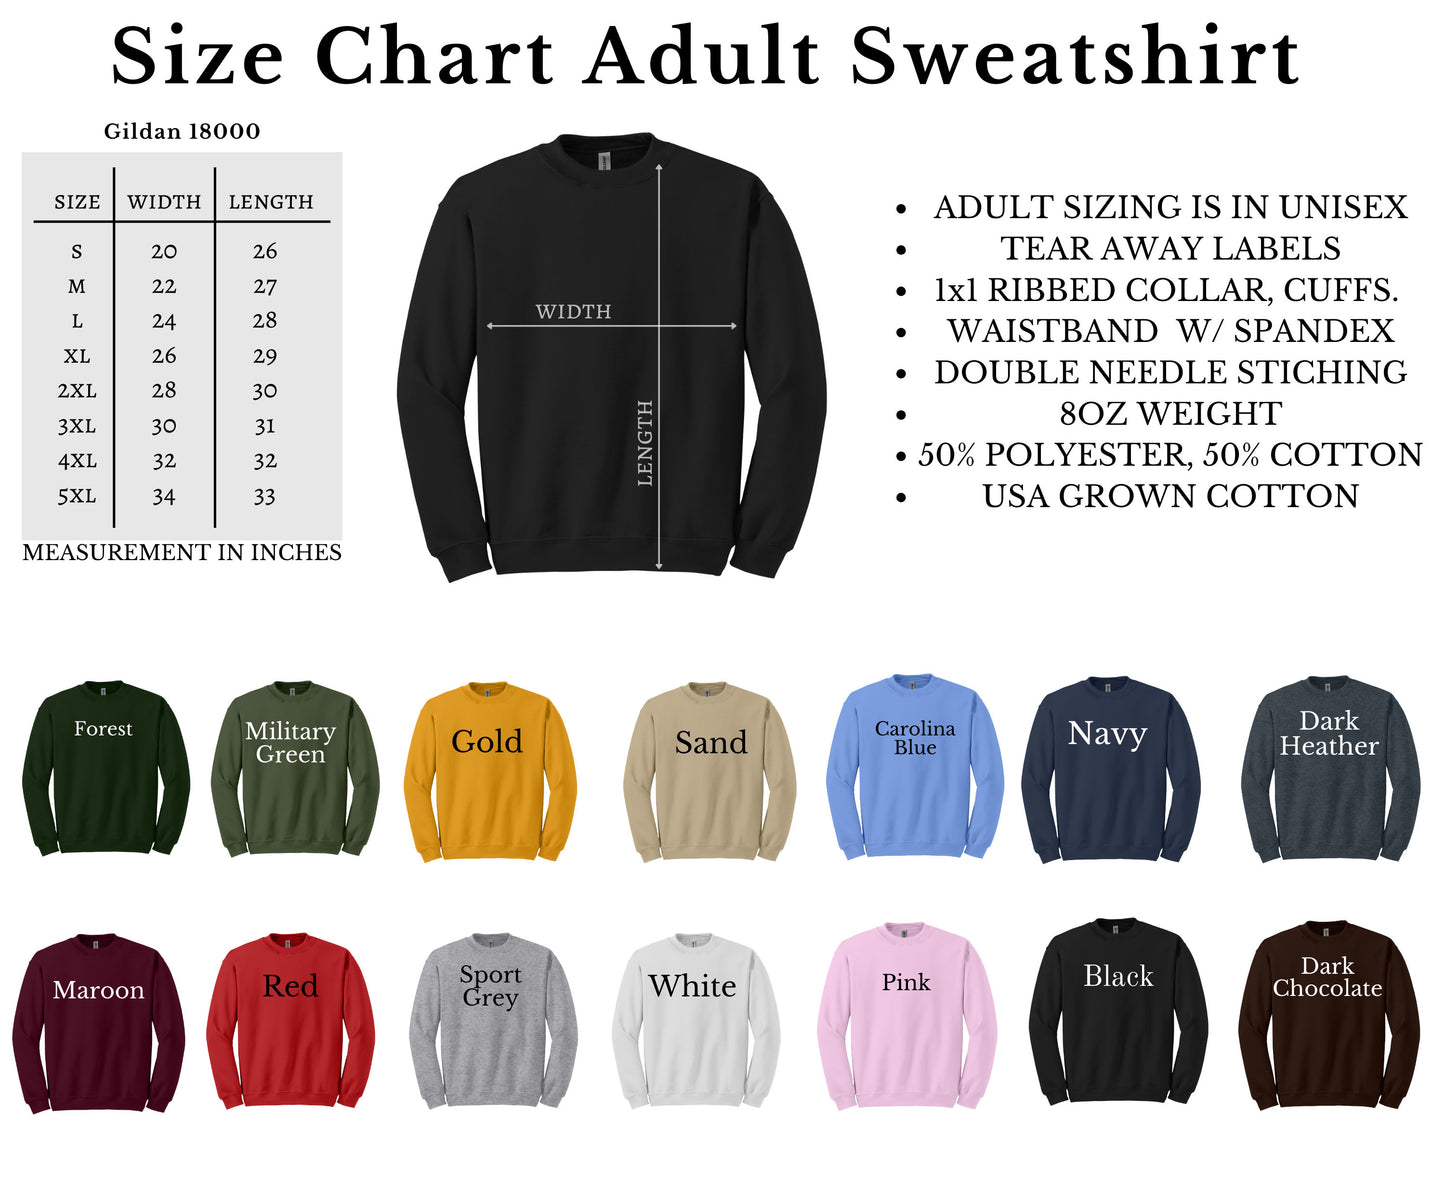 In My Mami Era Sweatshirt, In My Mami Era Shirt, In My Mami Era Crewneck, In My Mami Era Sweater, Oversized Sweater, Comfy Sweatshirt, Gift